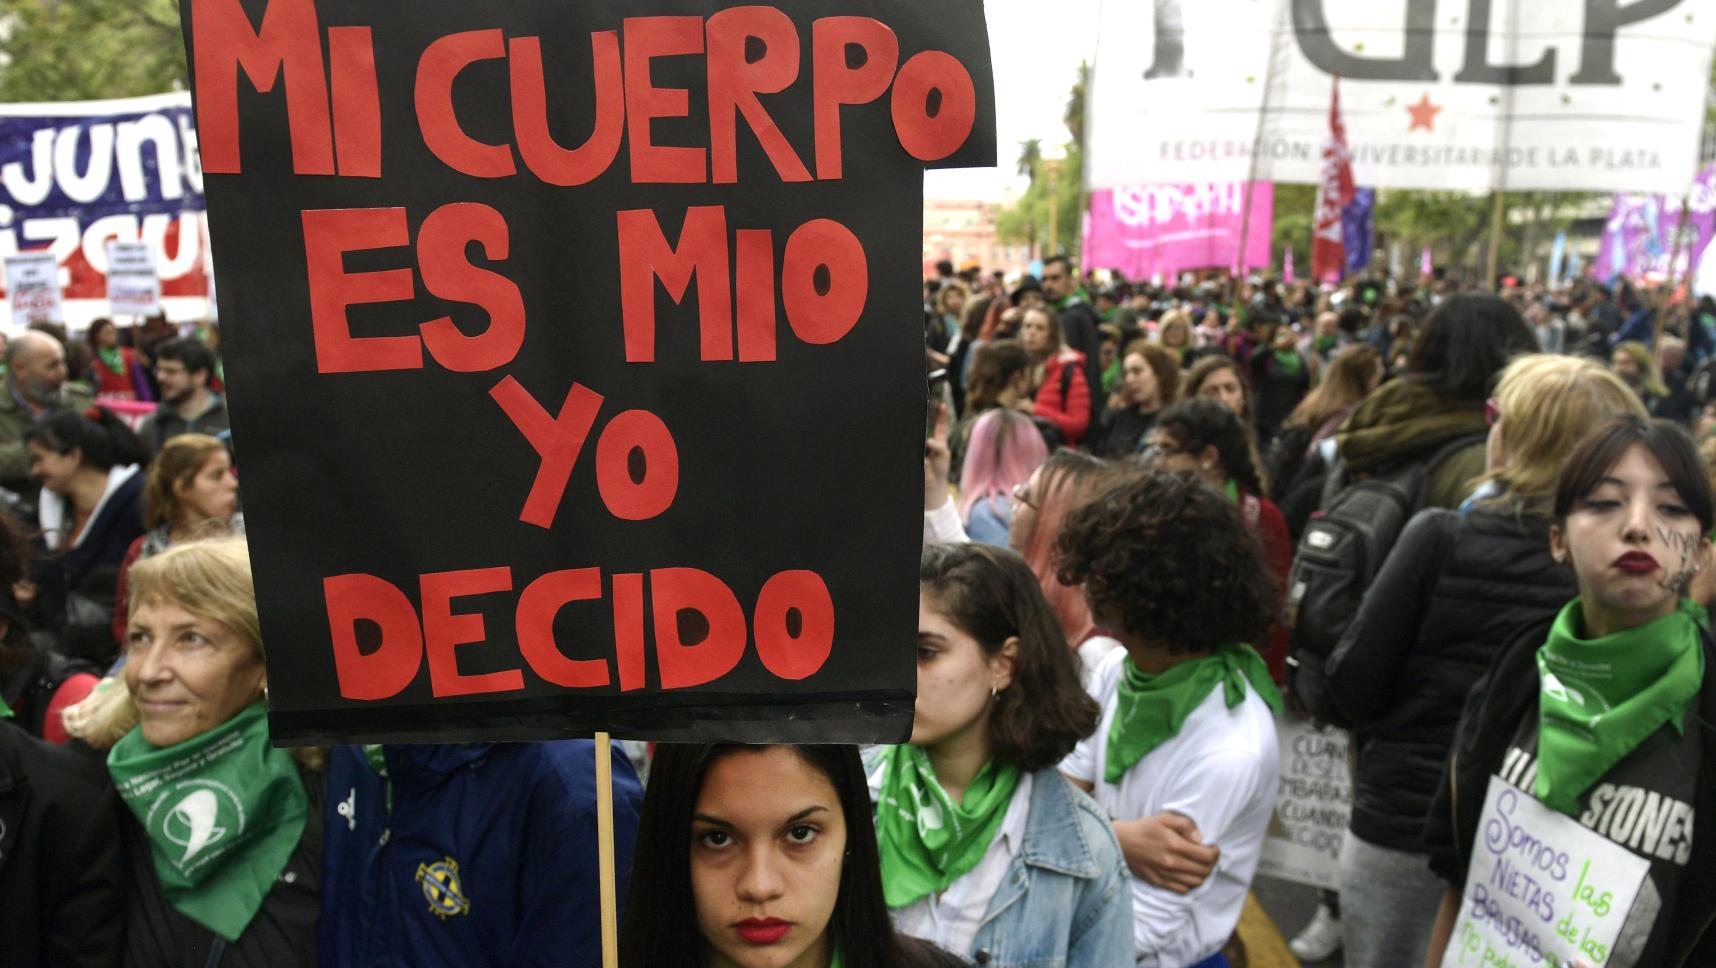 Arjantin'de Kürtajı Suç Olmaktan Çıkaran Yasa İmzalandı! 